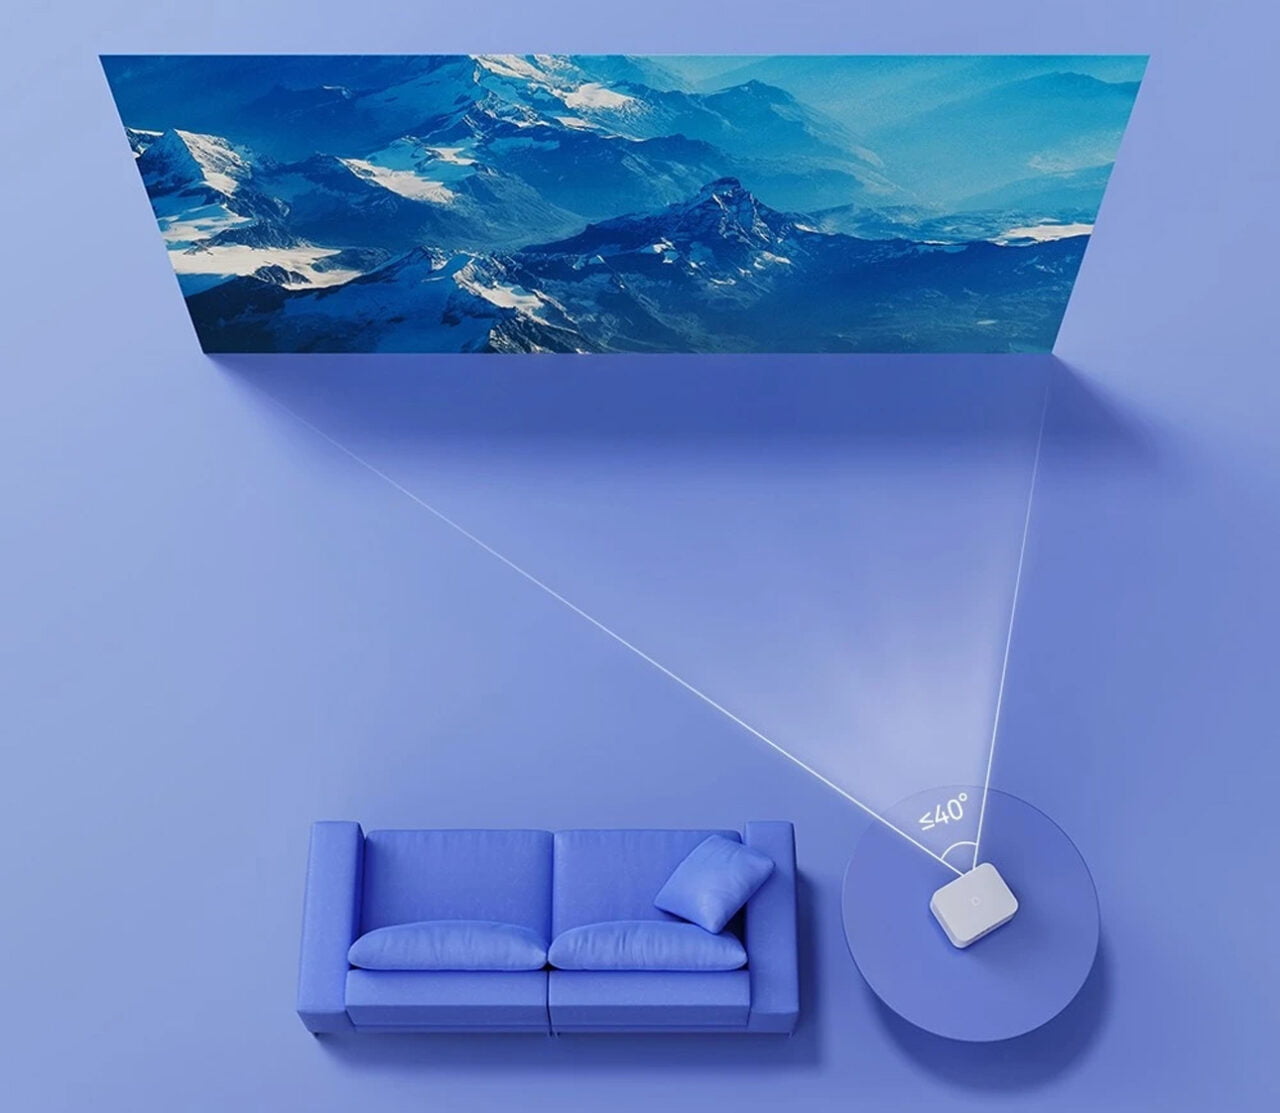 A imagem mostra um projetor de parede projetando uma imagem de montanhas na parede de uma sala com um sofá azul, criando uma impressão de extraordinária profundidade de espaço.